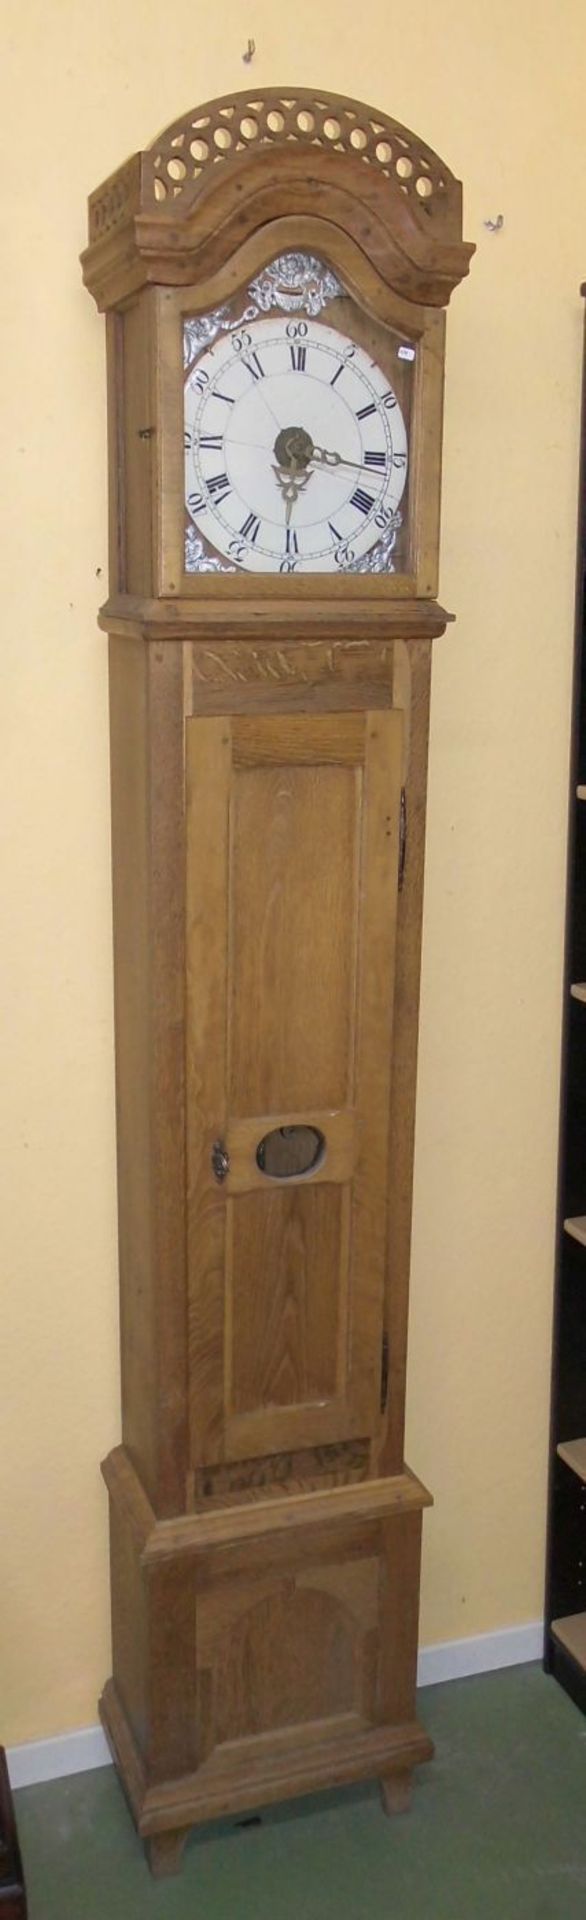 STANDUHR / longcase clock, 2. Hälfte 19. Jh.; Eichengehäuse im dreizonigen Aufbau. Pendelkasten